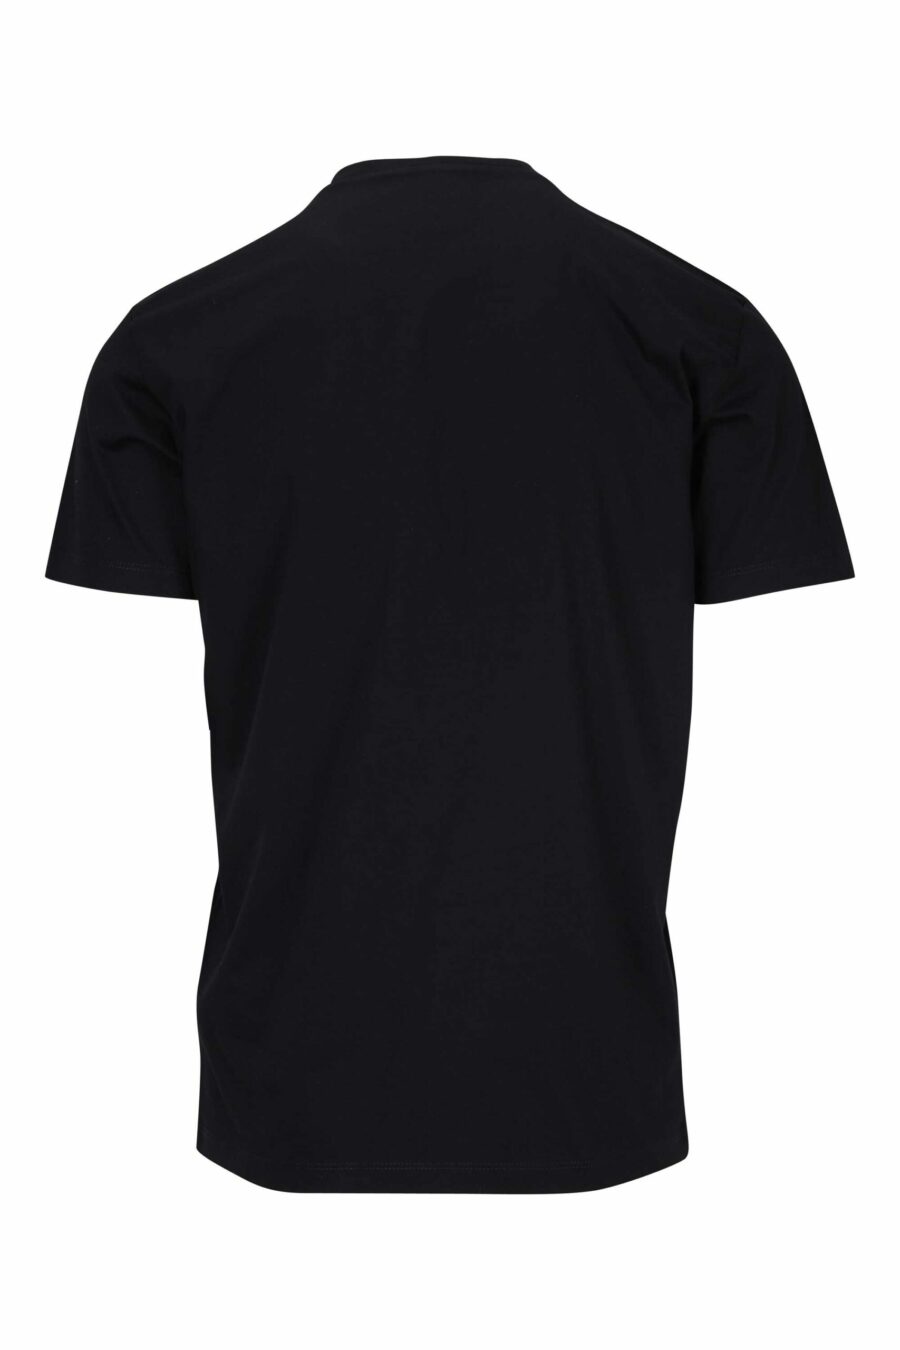 Schwarzes T-Shirt mit gefaltetem "Icon"-Logo - 8054148400989 1 skaliert